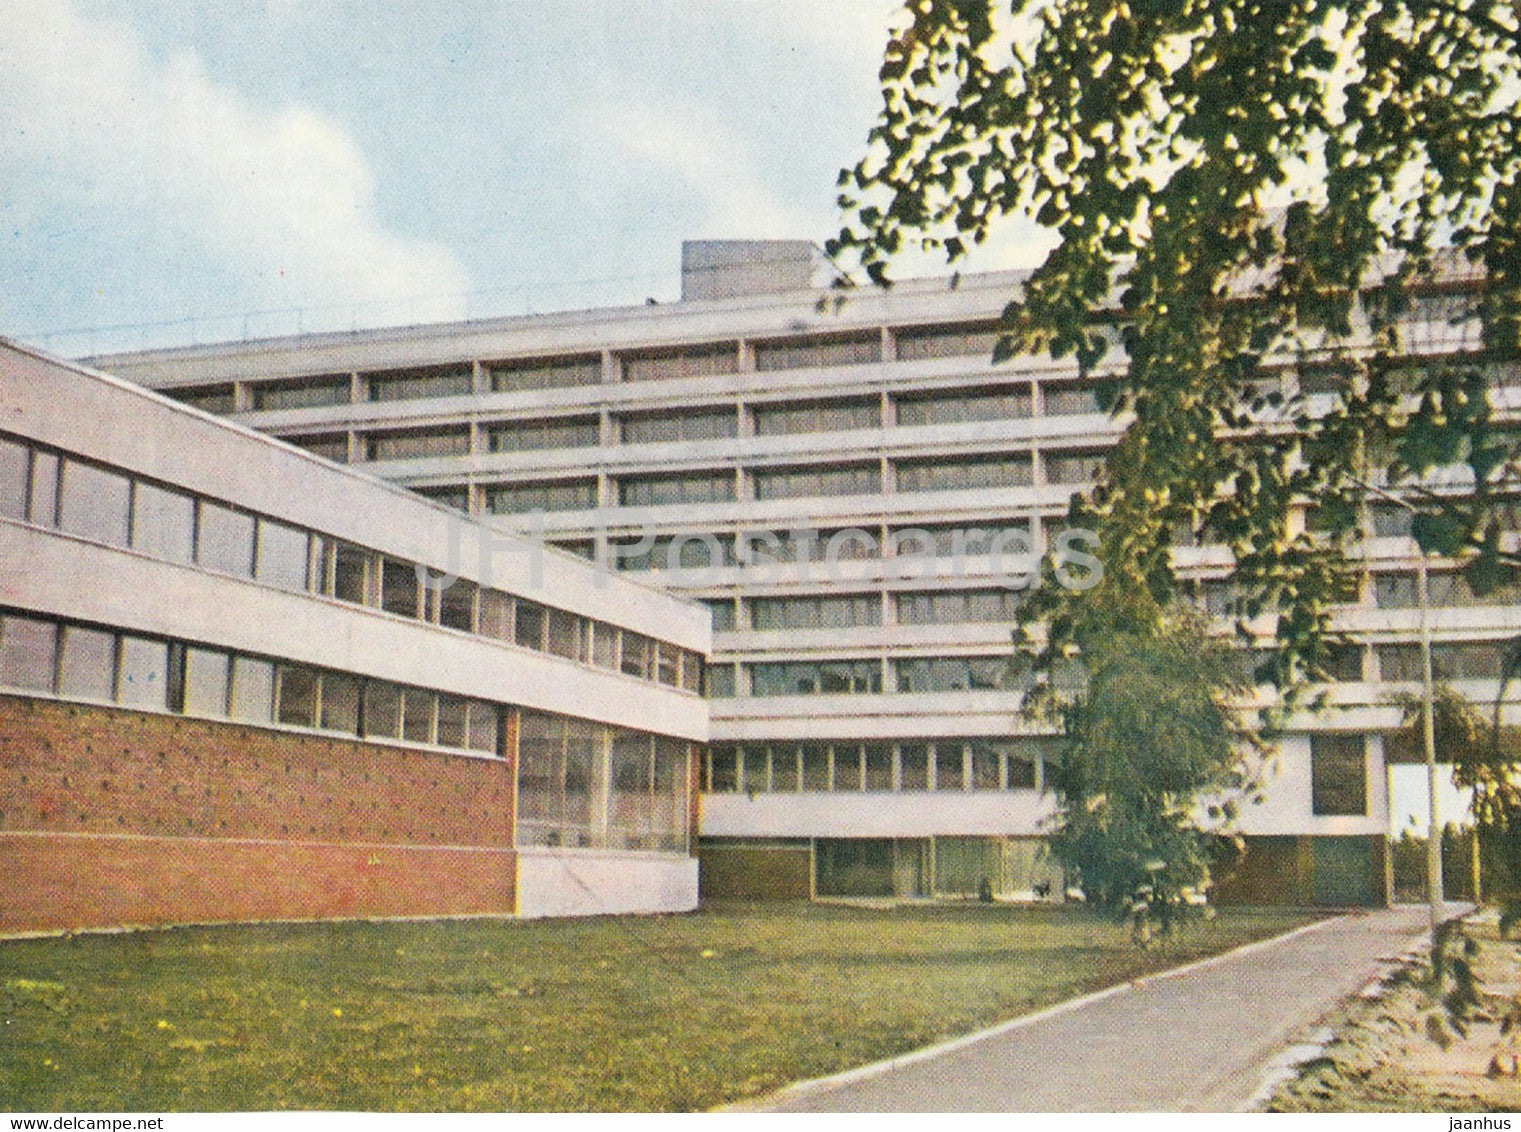 Jurmala - sanatorium in Jaunkemeri - Latvia USSR - unused - JH Postcards